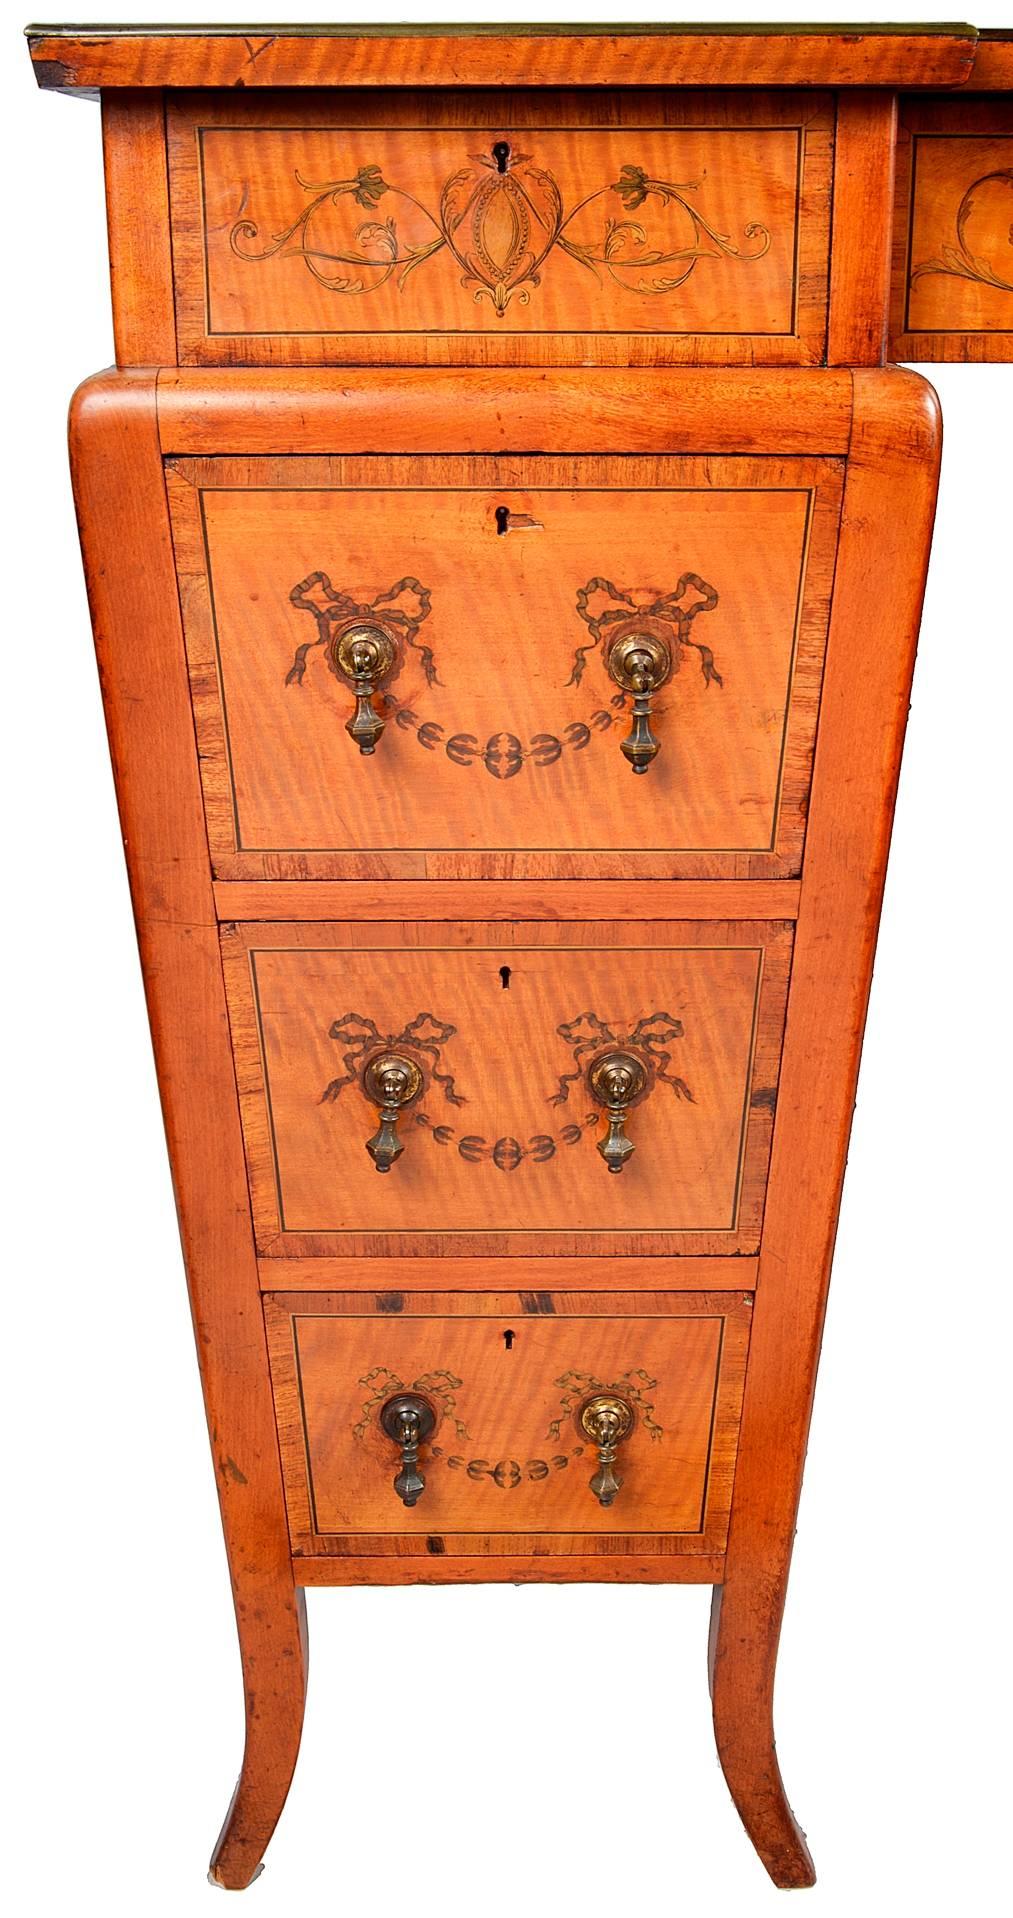 Eine sehr gute Qualität späten 19. Jahrhundert Satinholz eingelegten Sockel Schreibtisch. Mit seiner ursprünglichen marokkanischen geprägten Lederplatte, Intarsienverzierung auf der Oberseite, die Schubladenfronten und Seiten mit klassischer Swag-,